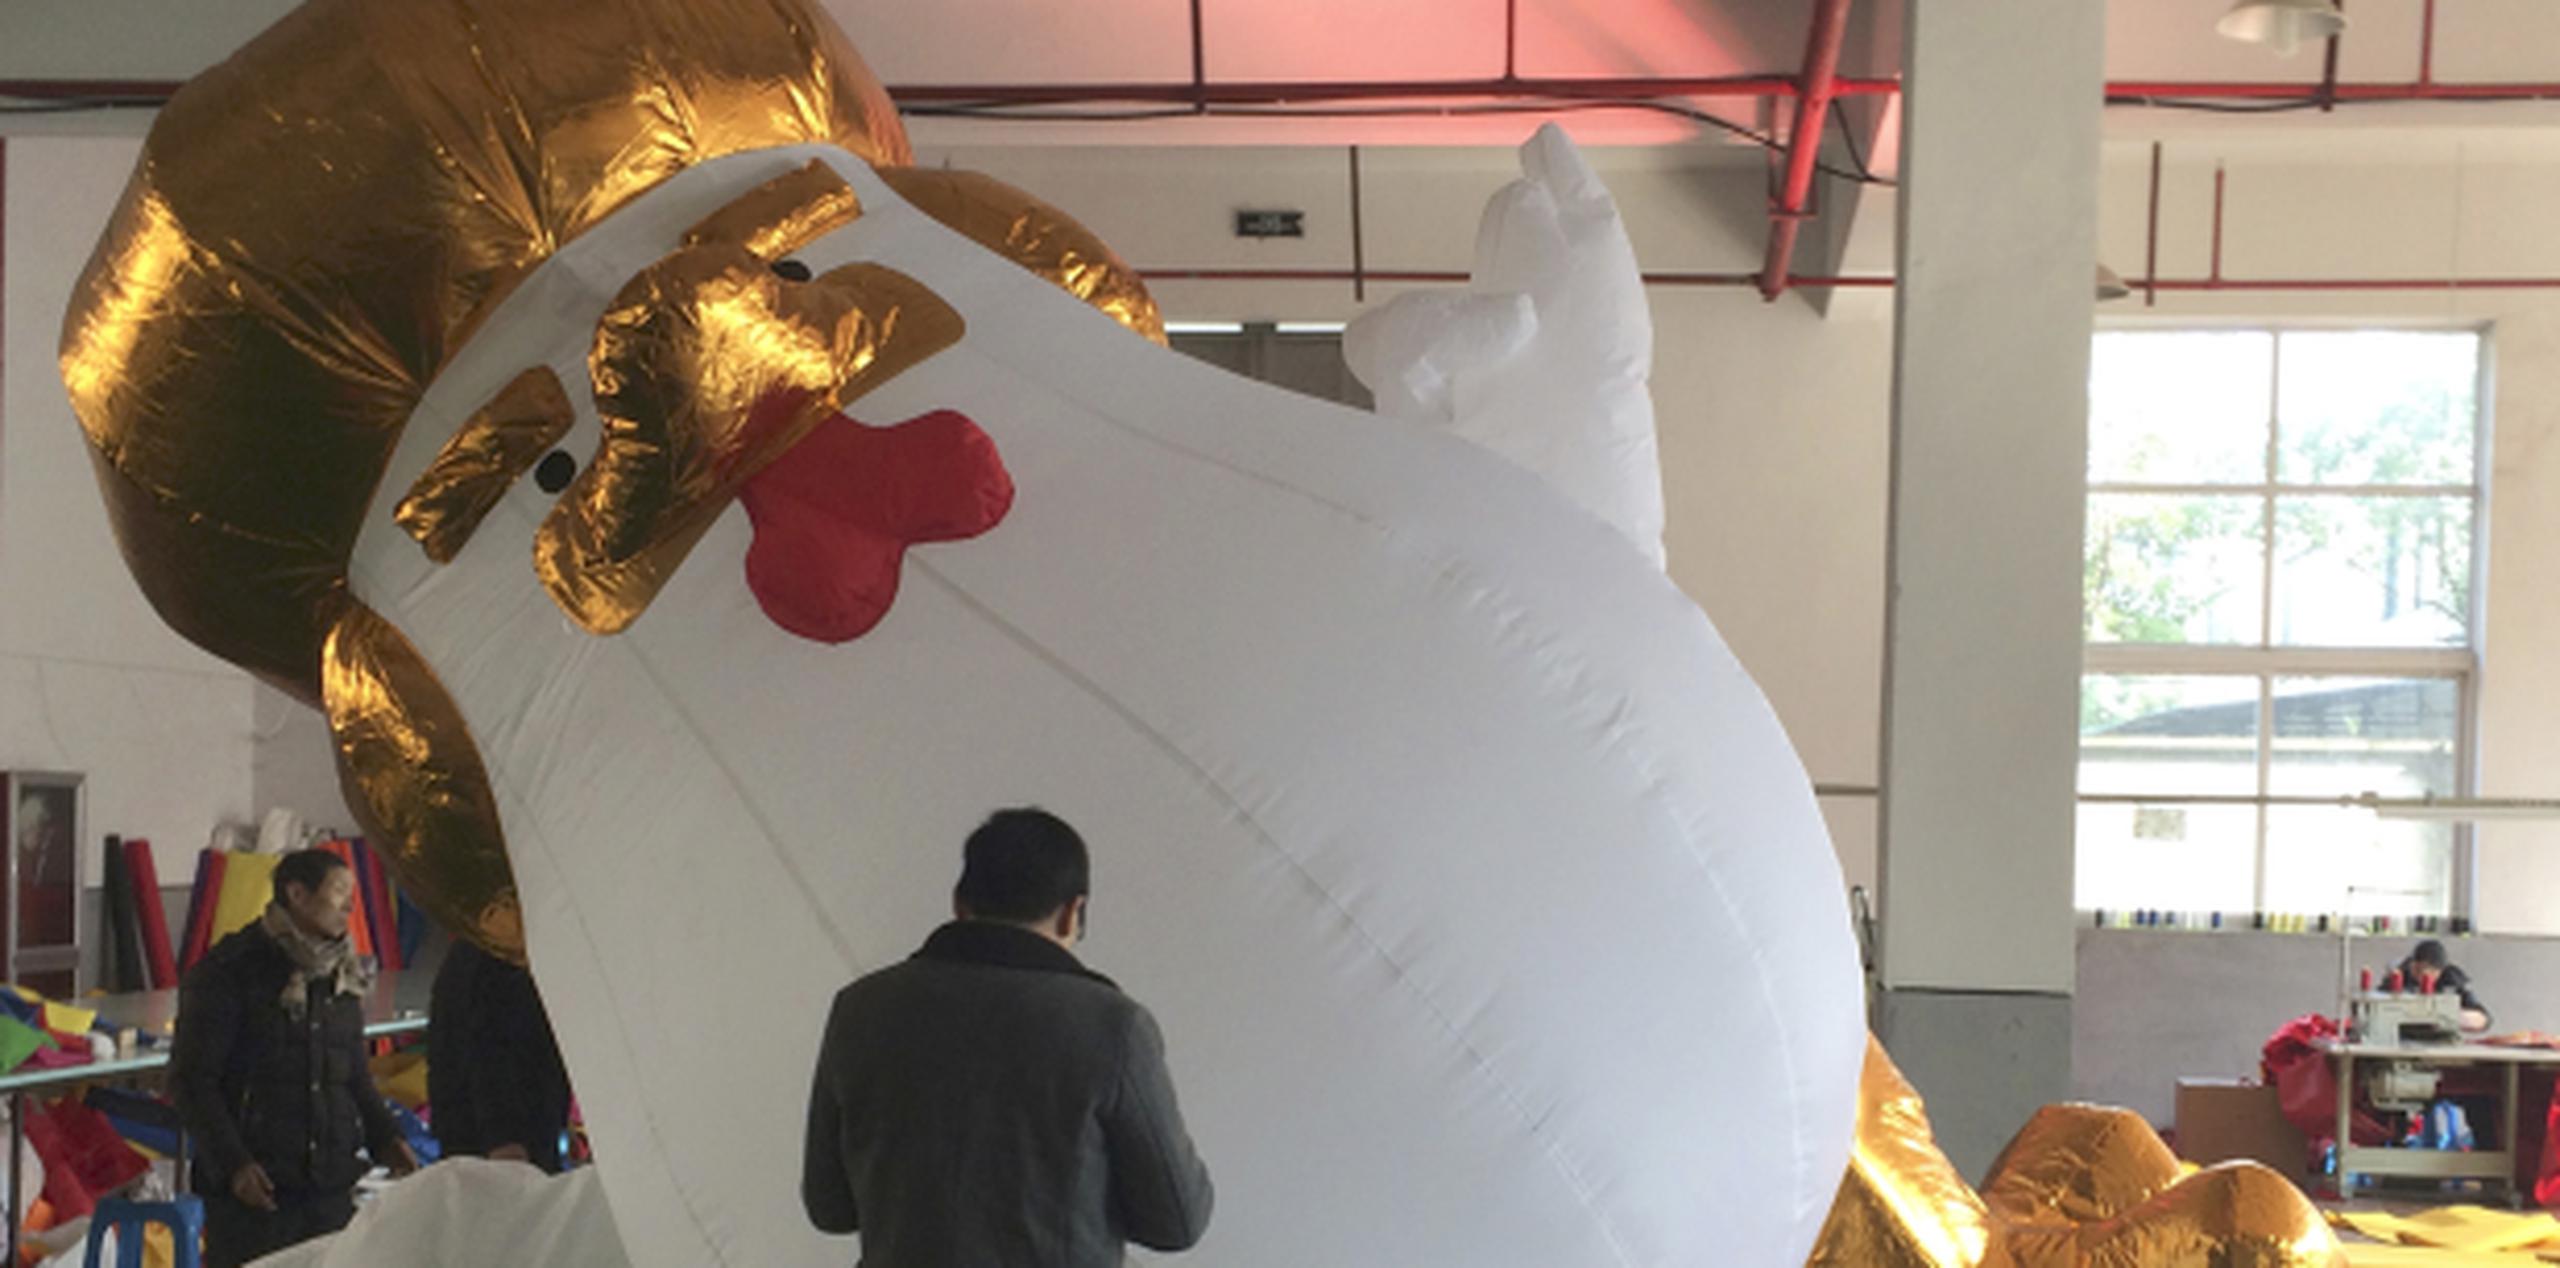 Un grupo de trabajadores en la fábrica de Yifang Inflatables revisa un gallo inflable que refleja semejanzas con el presidente Donald Trump. (AP/Paul Traynor)